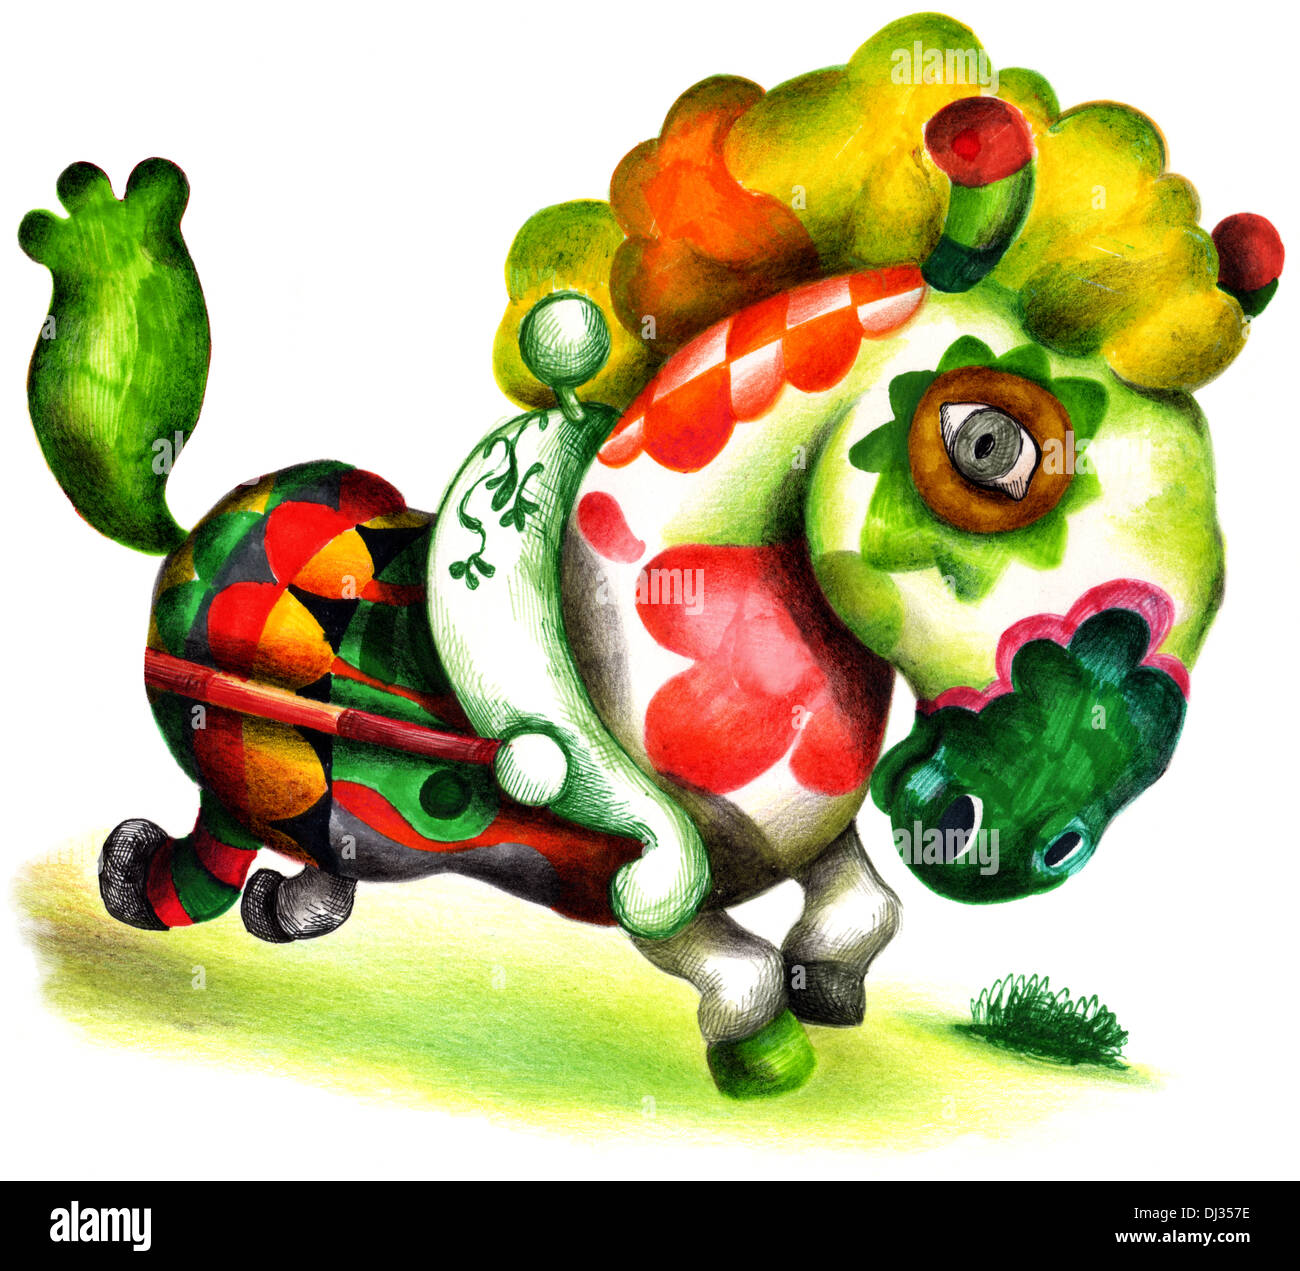 Illustration de cheval carrousel colorés sur fond blanc Banque D'Images